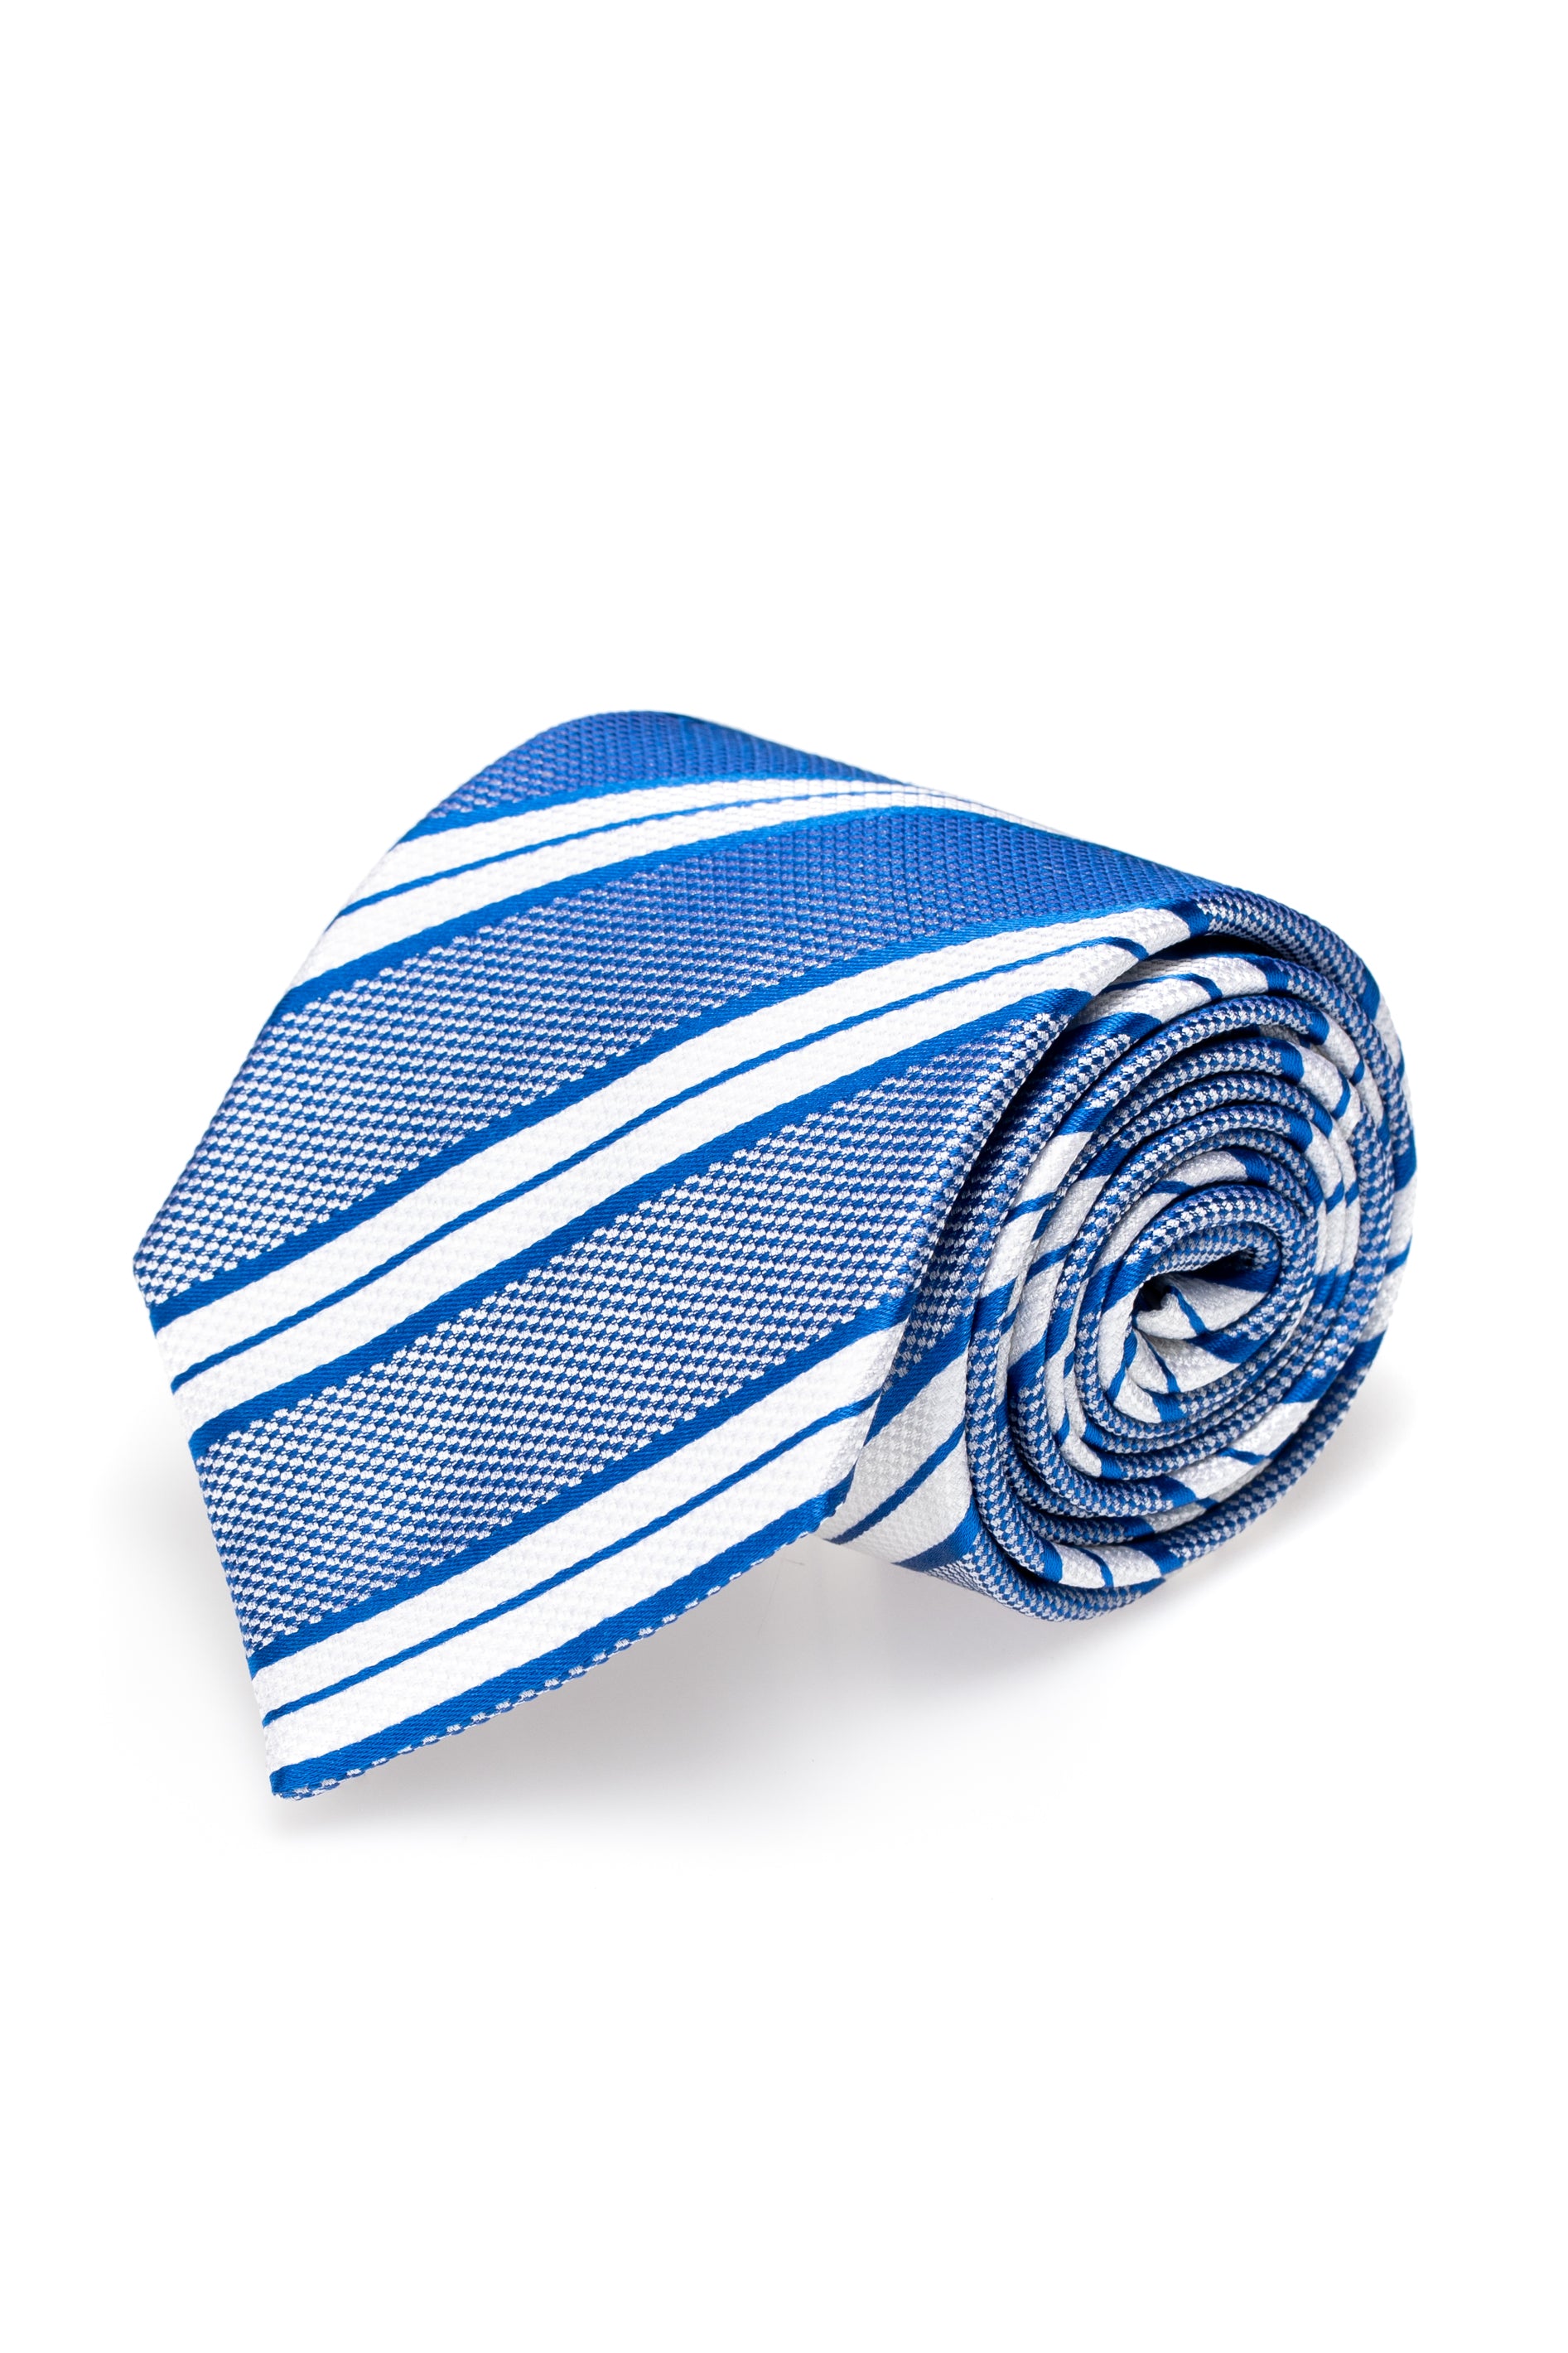 Blue silk tie with stripes